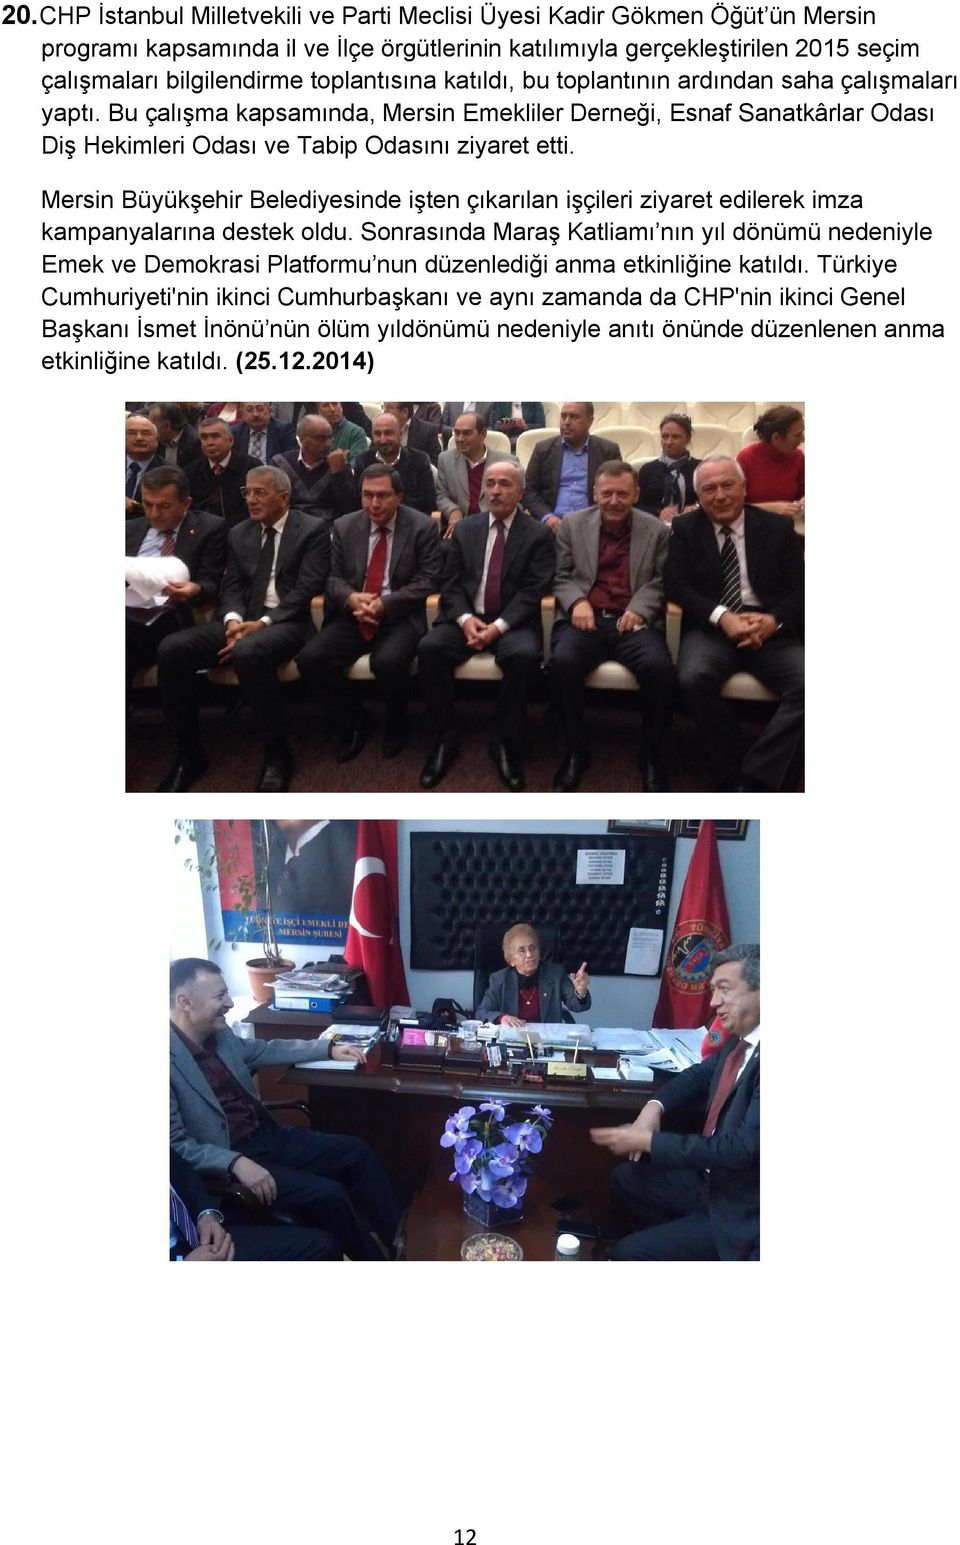 Mersin Büyükşehir Belediyesinde işten çıkarılan işçileri ziyaret edilerek imza kampanyalarına destek oldu.